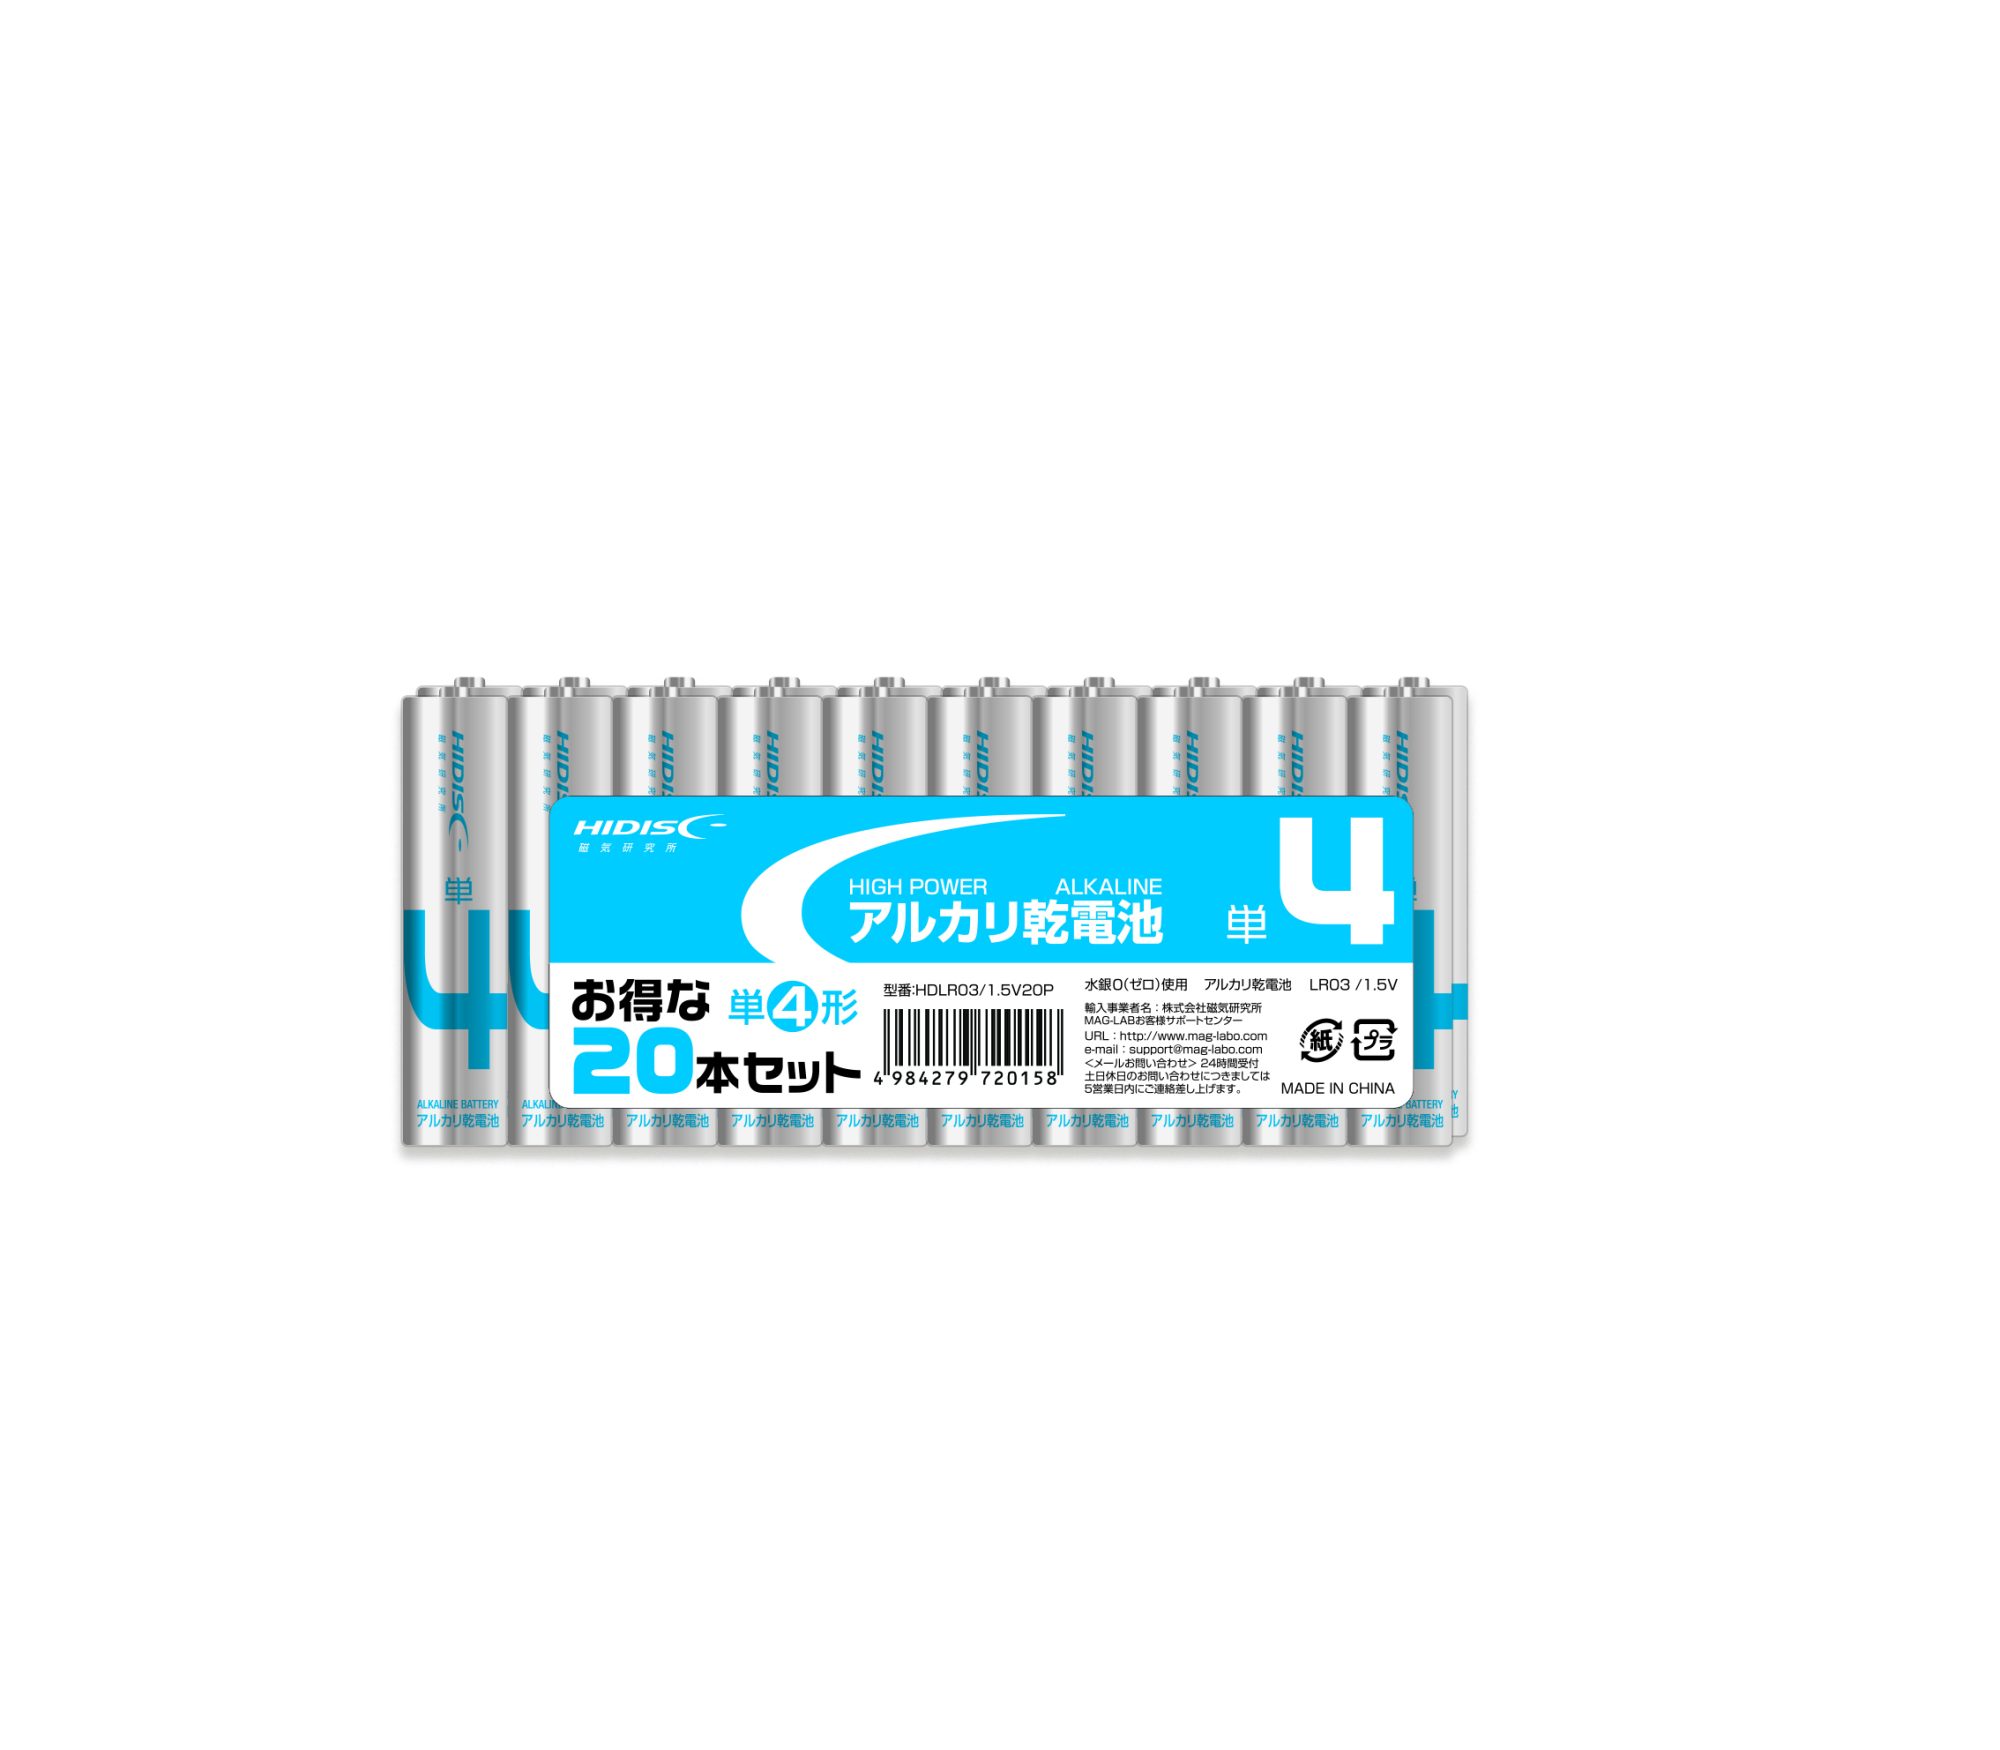 アルカリ乾電池 単4形20本パック HDLR03/1.5V20P